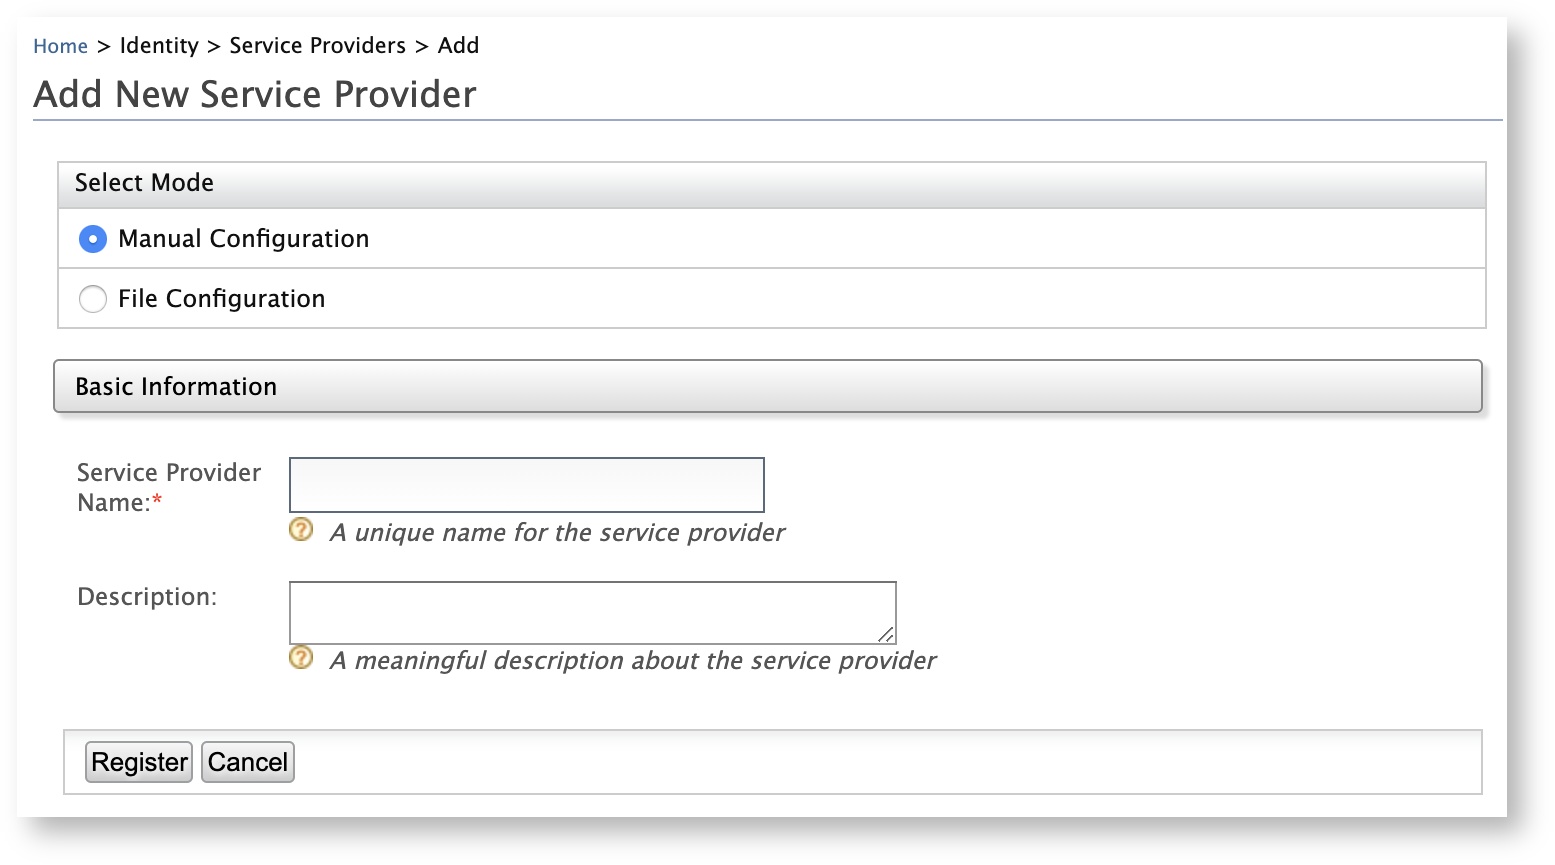 Add New Service Provider screen